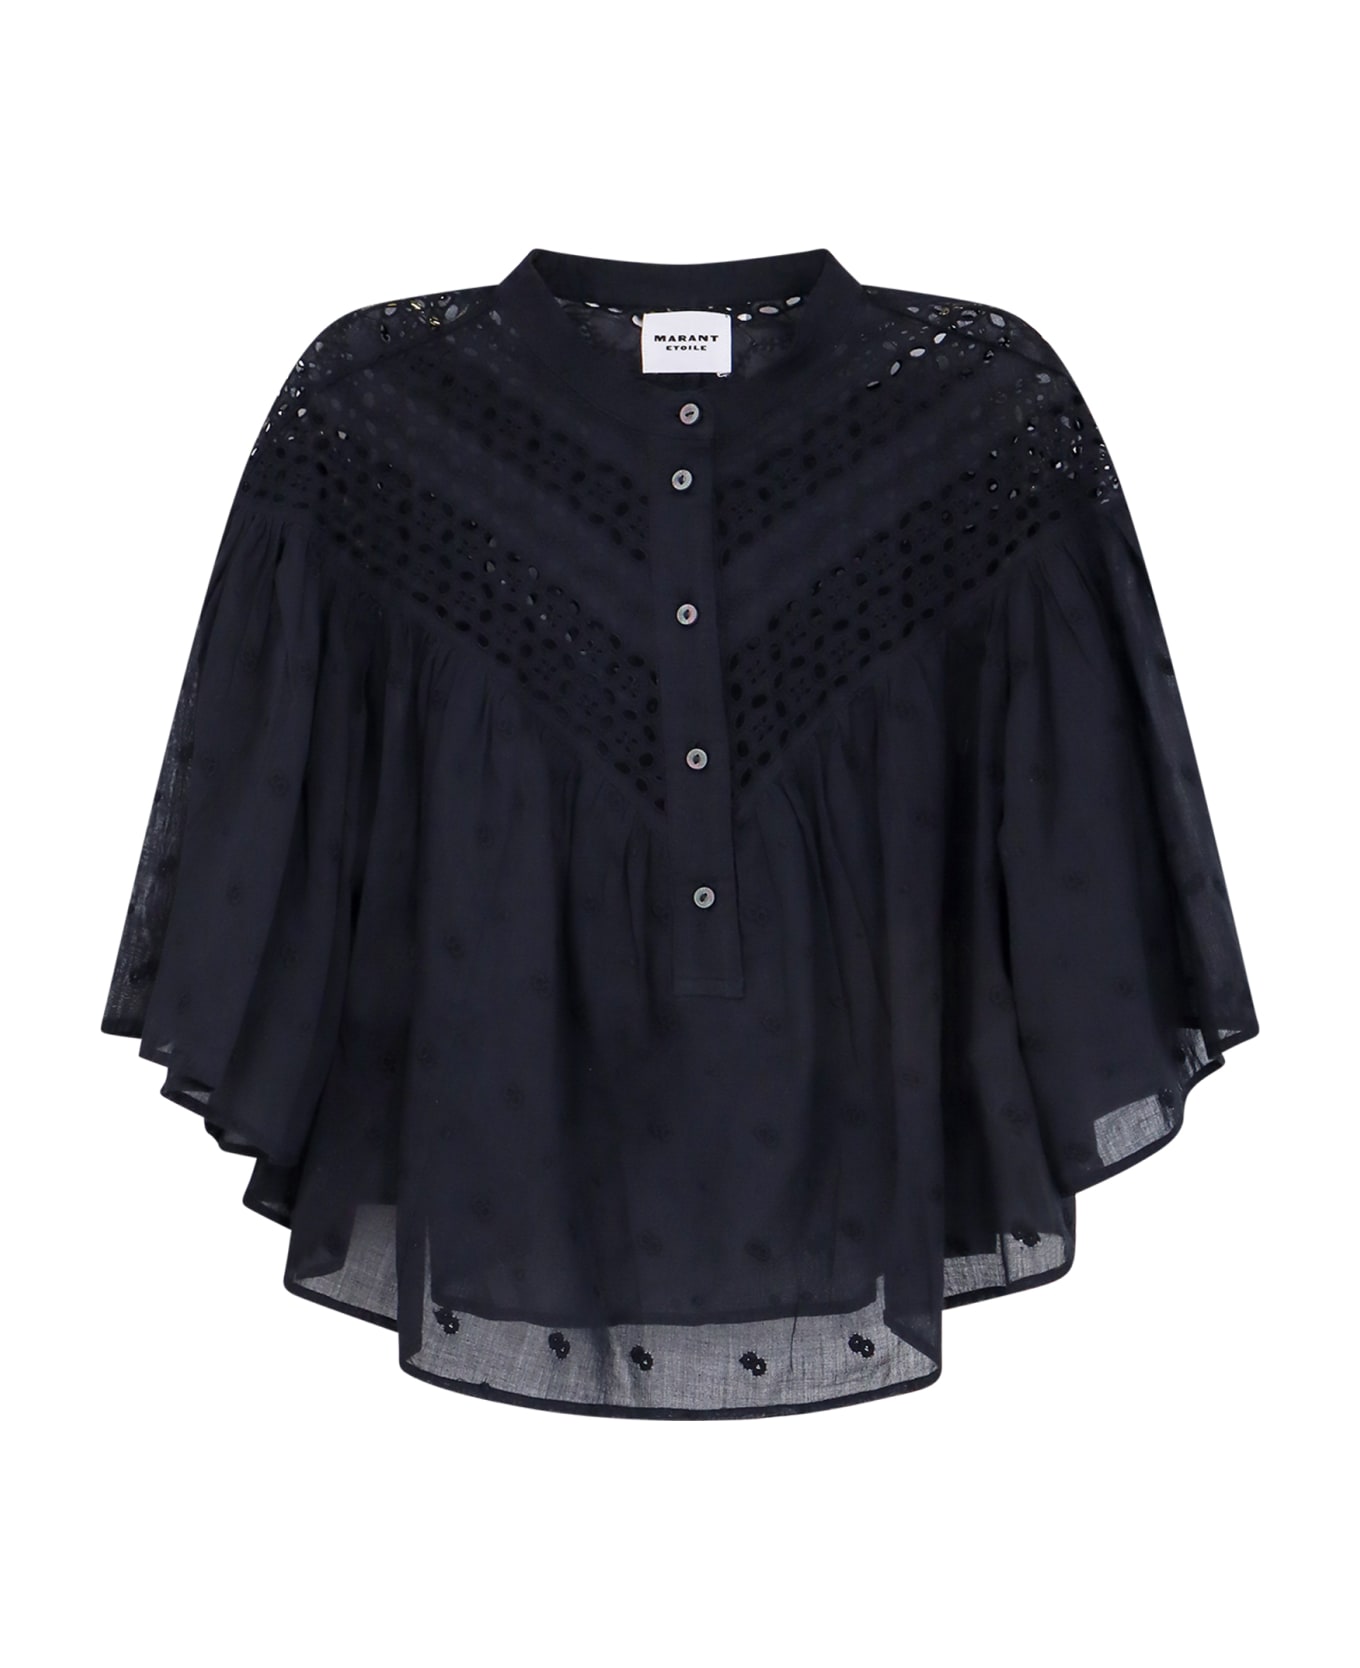 Marant Étoile Safi Shirt - Black